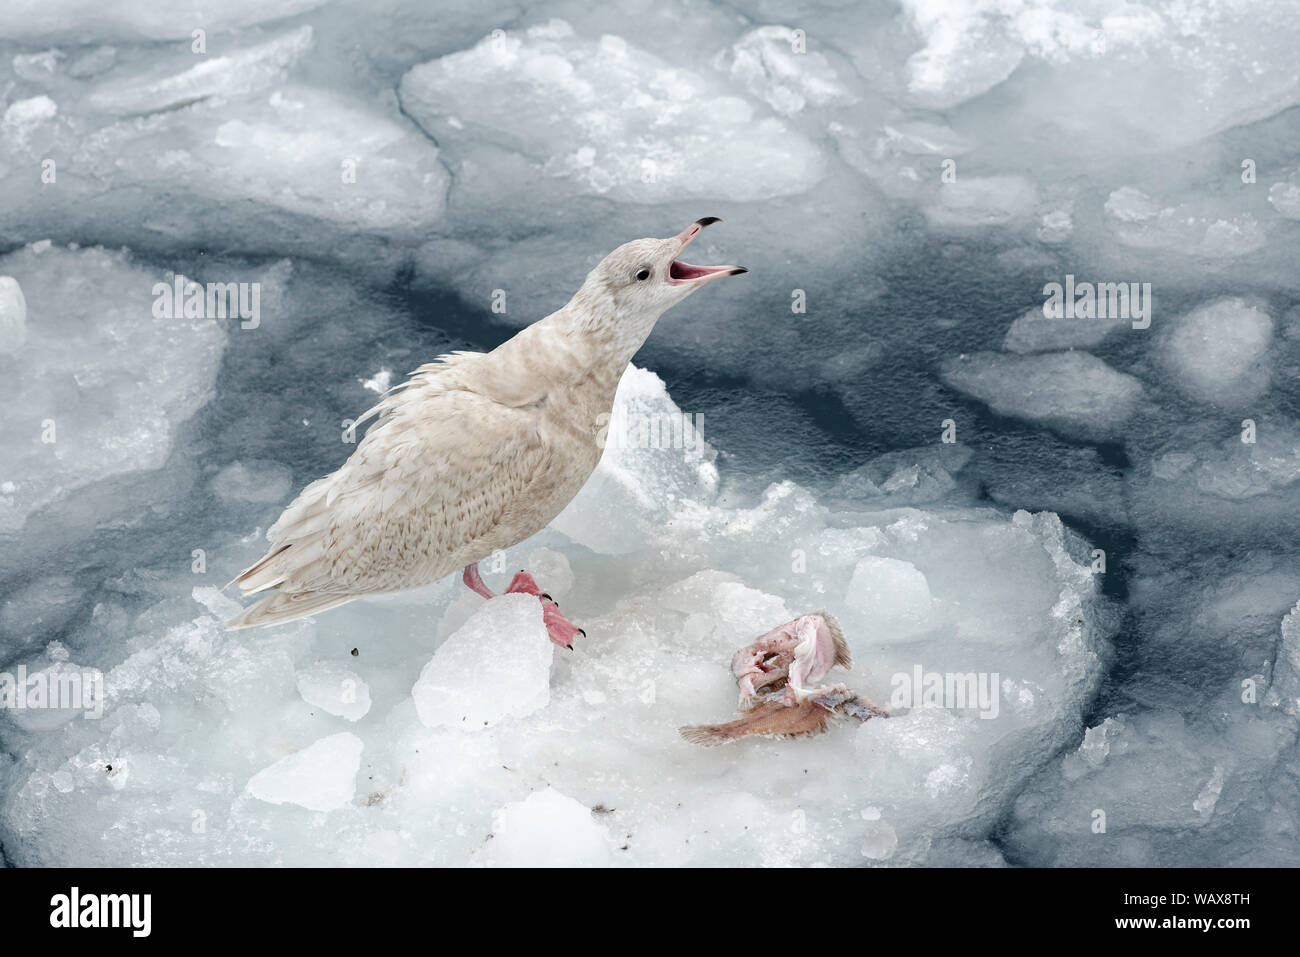 Mouette arctique (Larus glaucoides), juvénile, en plumage hivernal, debout avec bec ouvert sur une banquise, port, Ilulissat, Avannnaata, Groenland, Danemark Banque D'Images